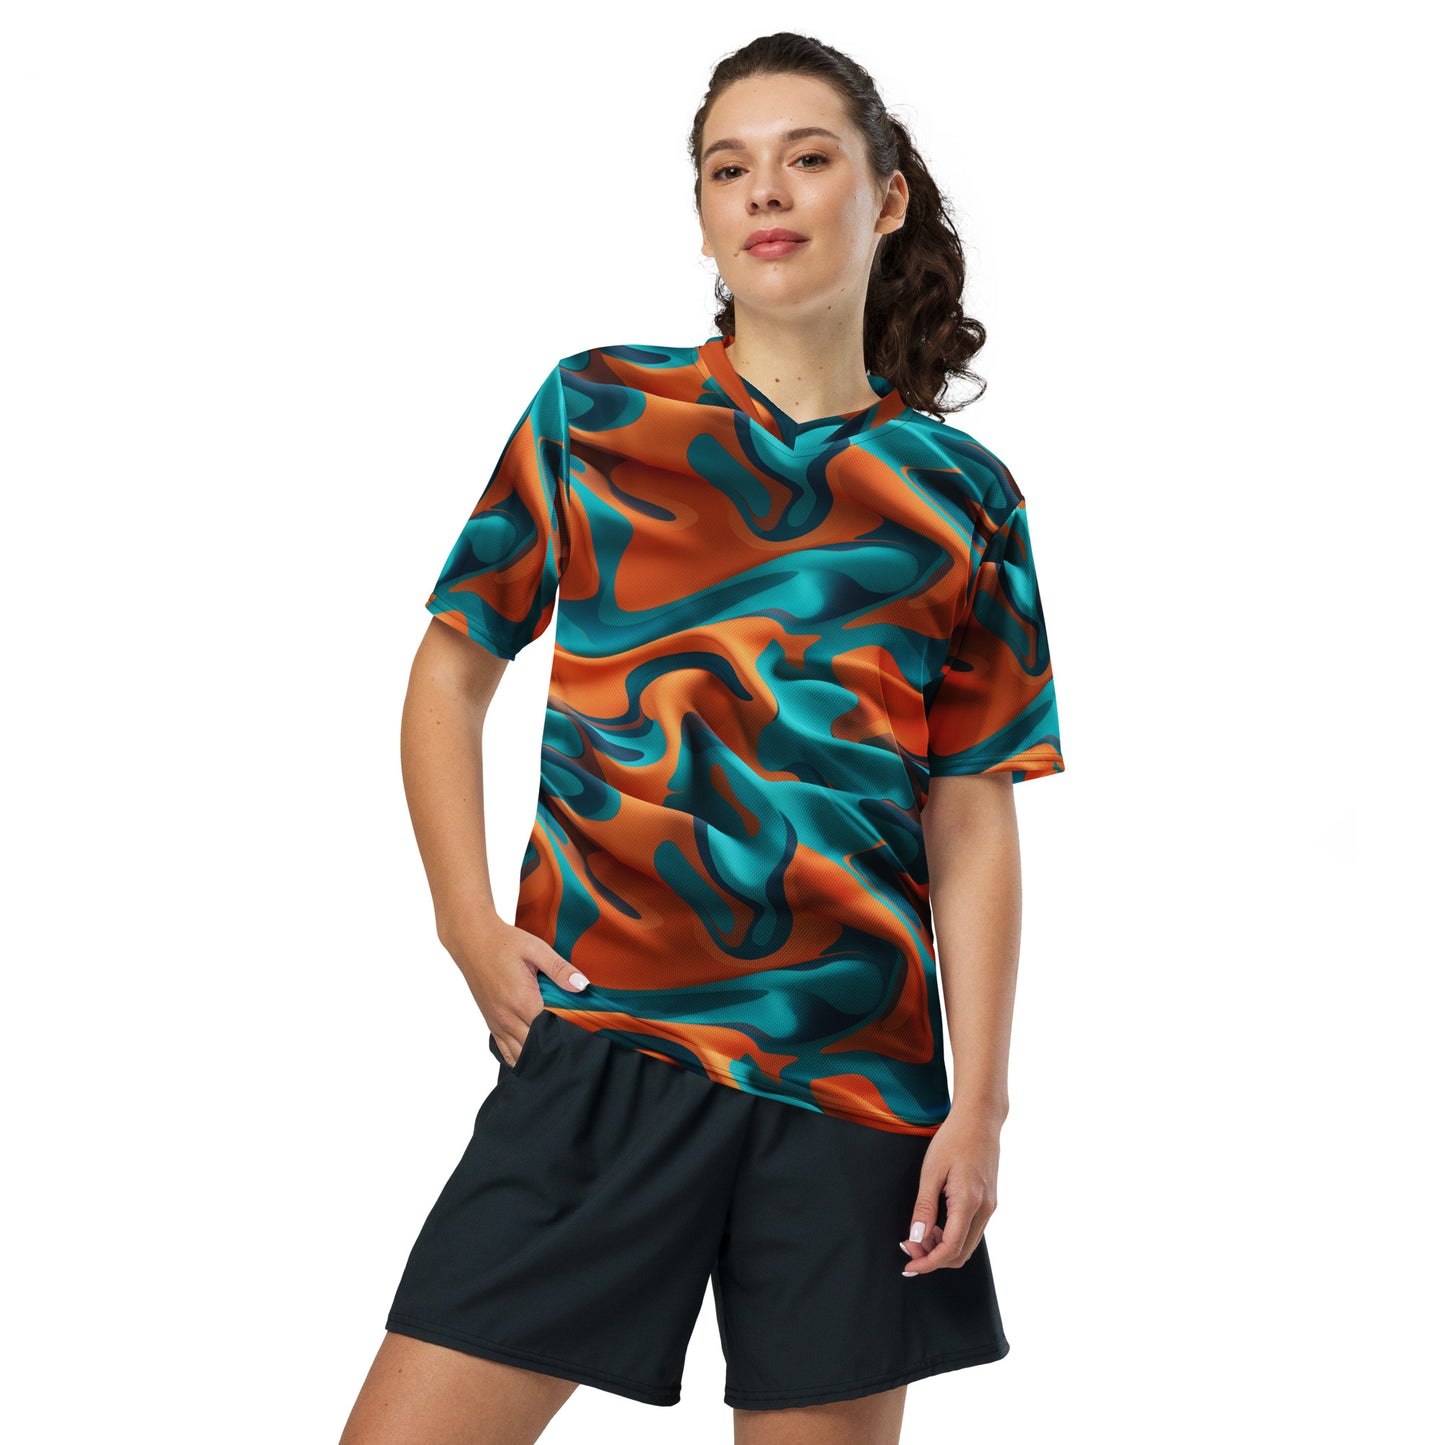 Orange Camouflage unisex sports jersey